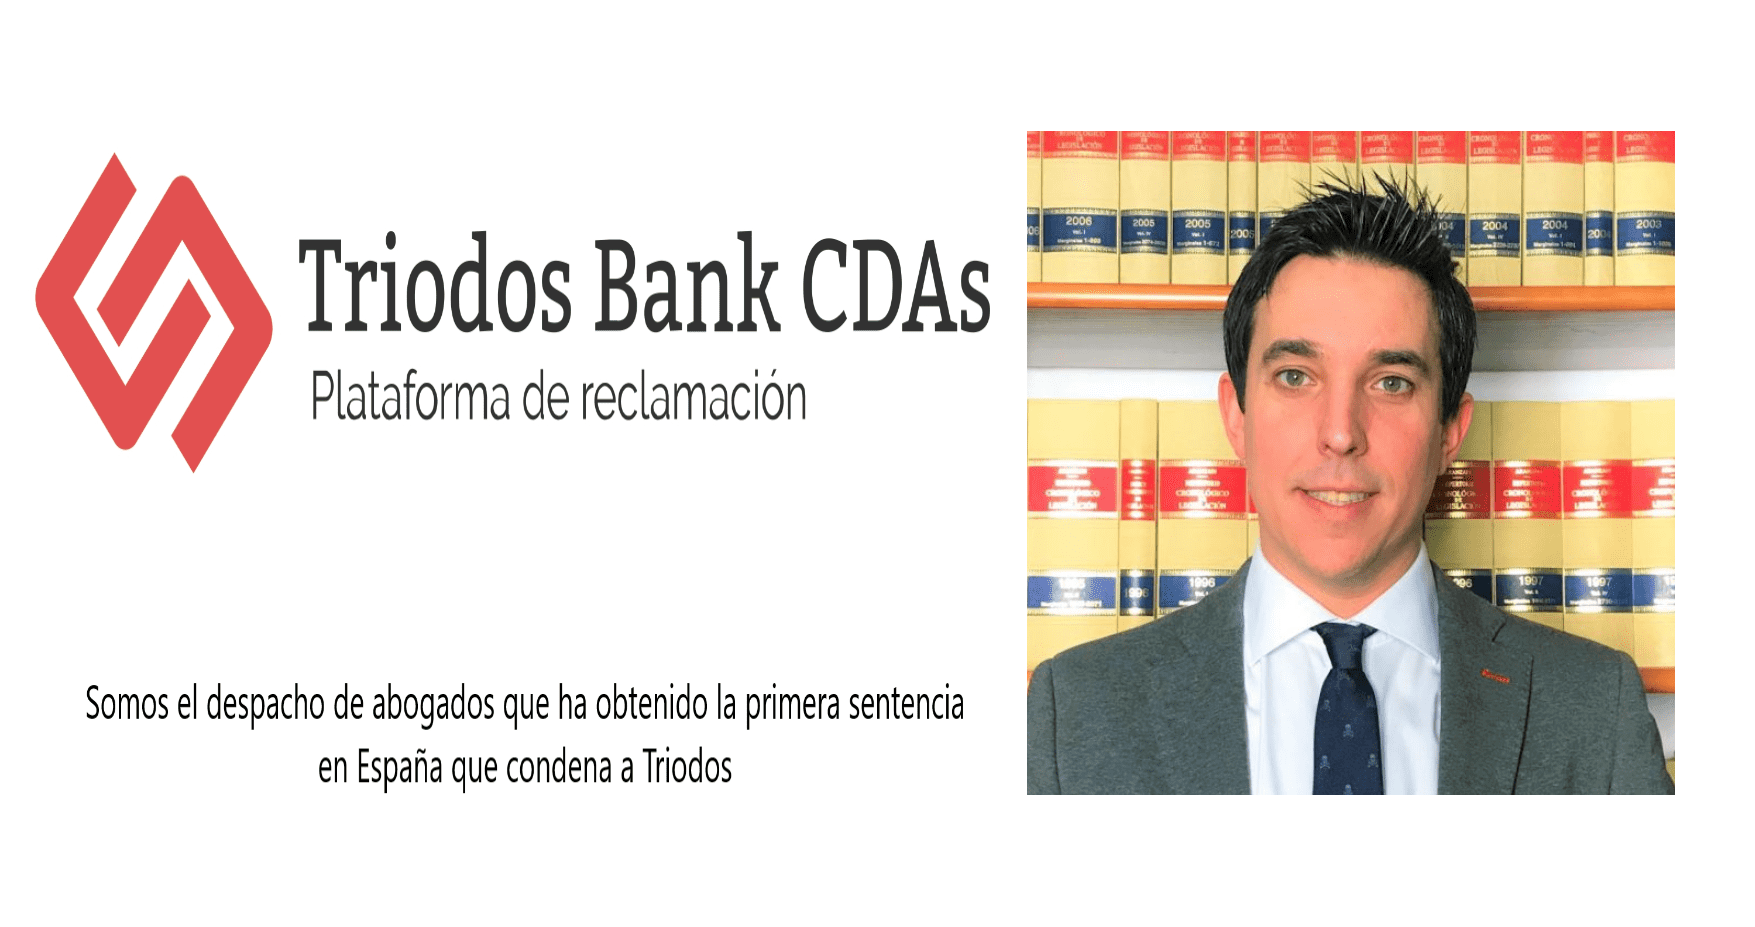 El ultimátum de Triodos Bank a los titulares de CDAs con la implantación del sistema Captin